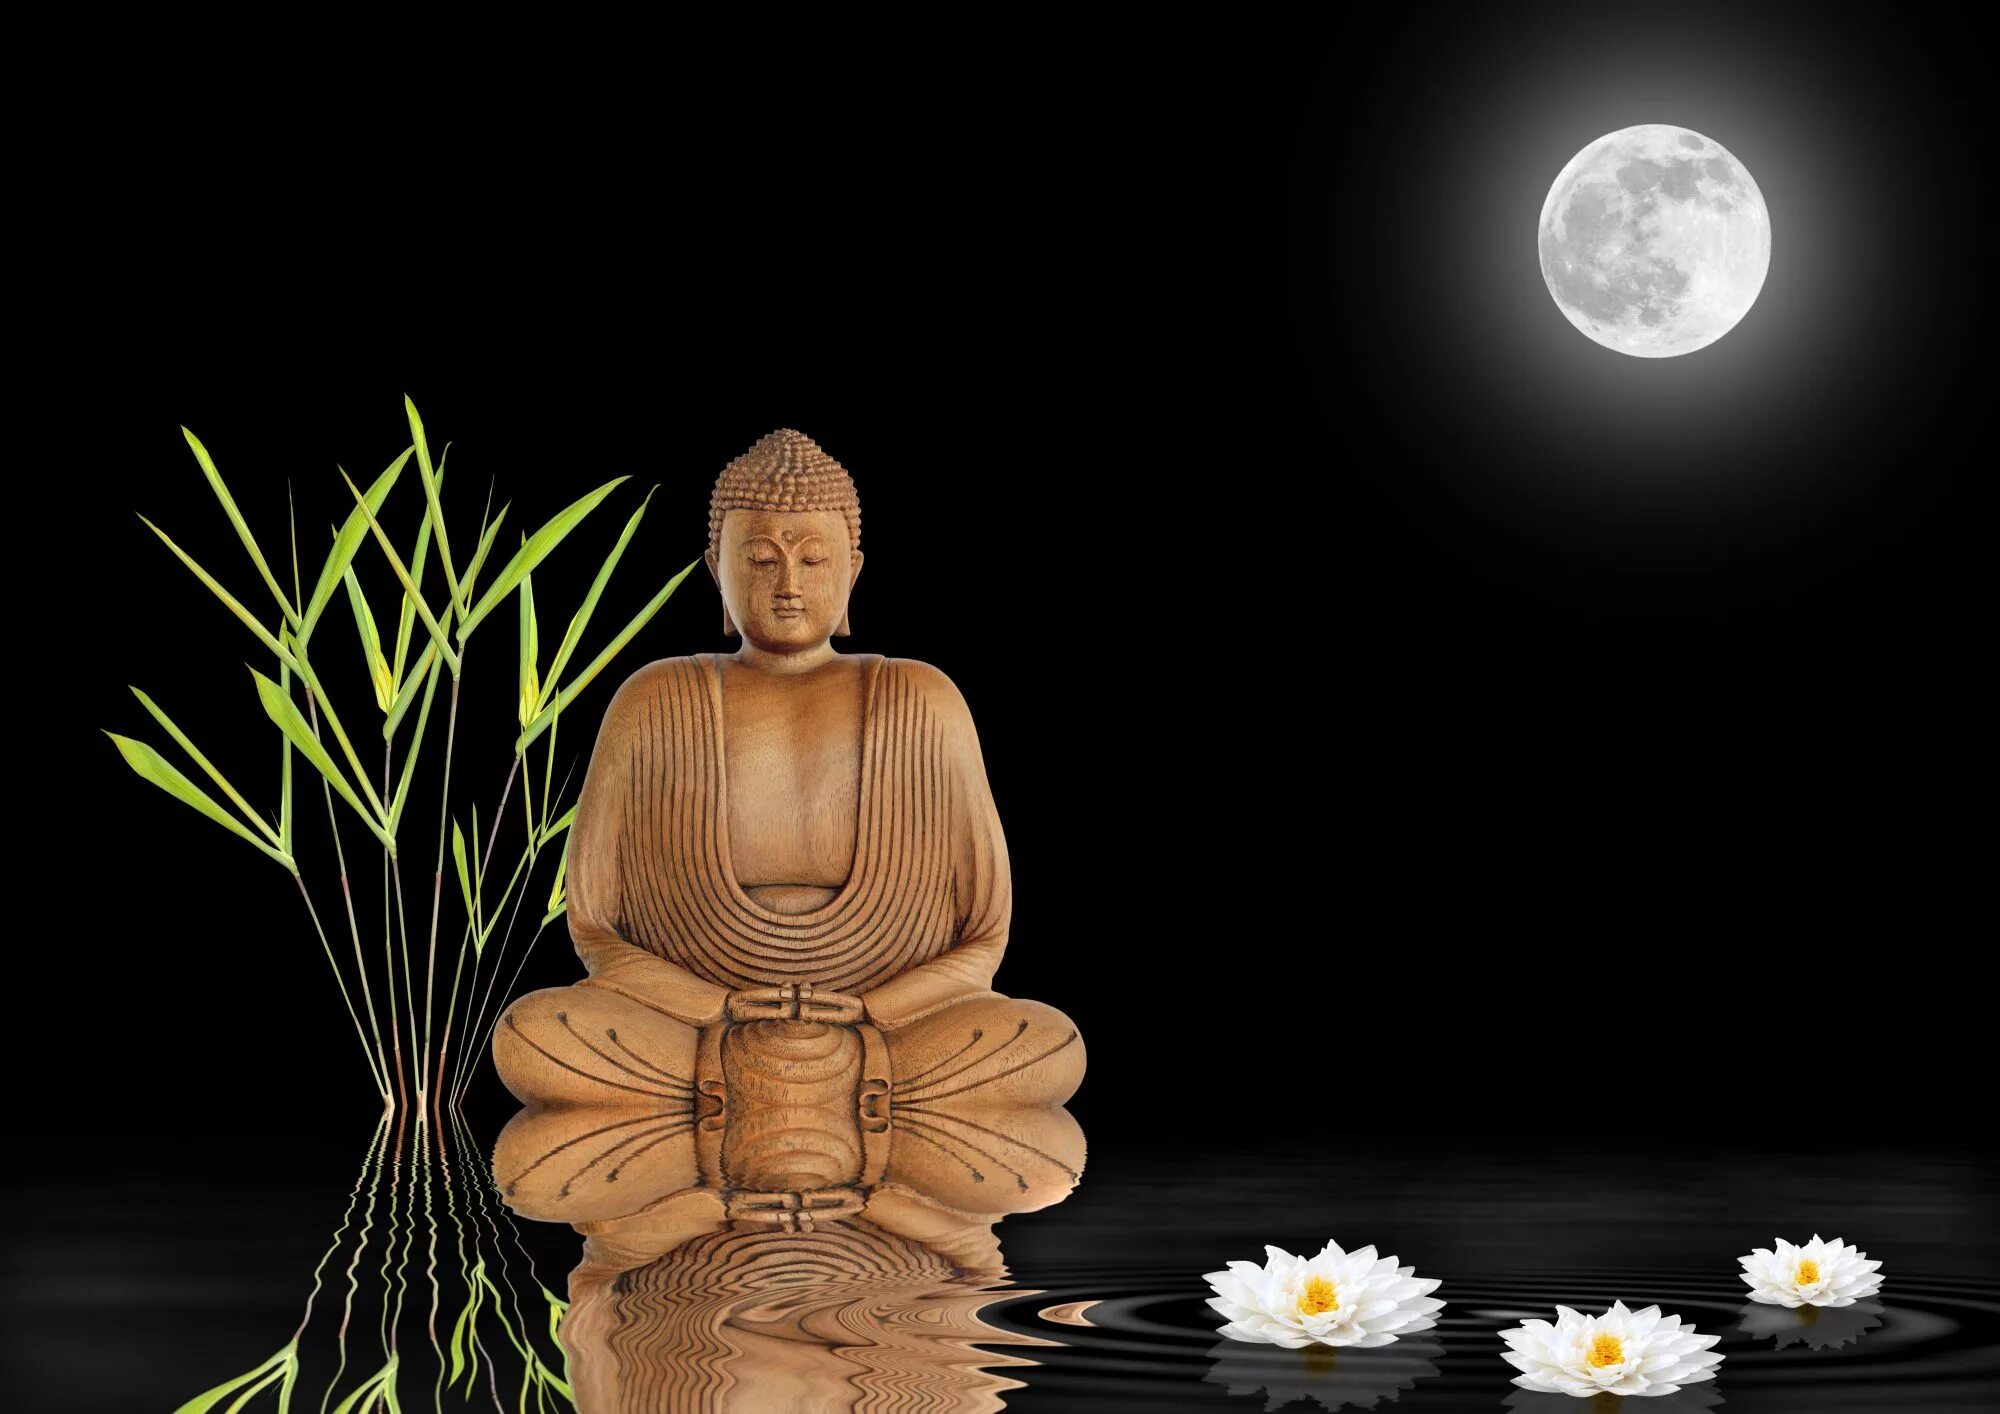 Видео 4 на дзен. Будда Лотос дзен. Бамбук медитация. Икебана дзен буддизм. Пустой бамбук медитация.